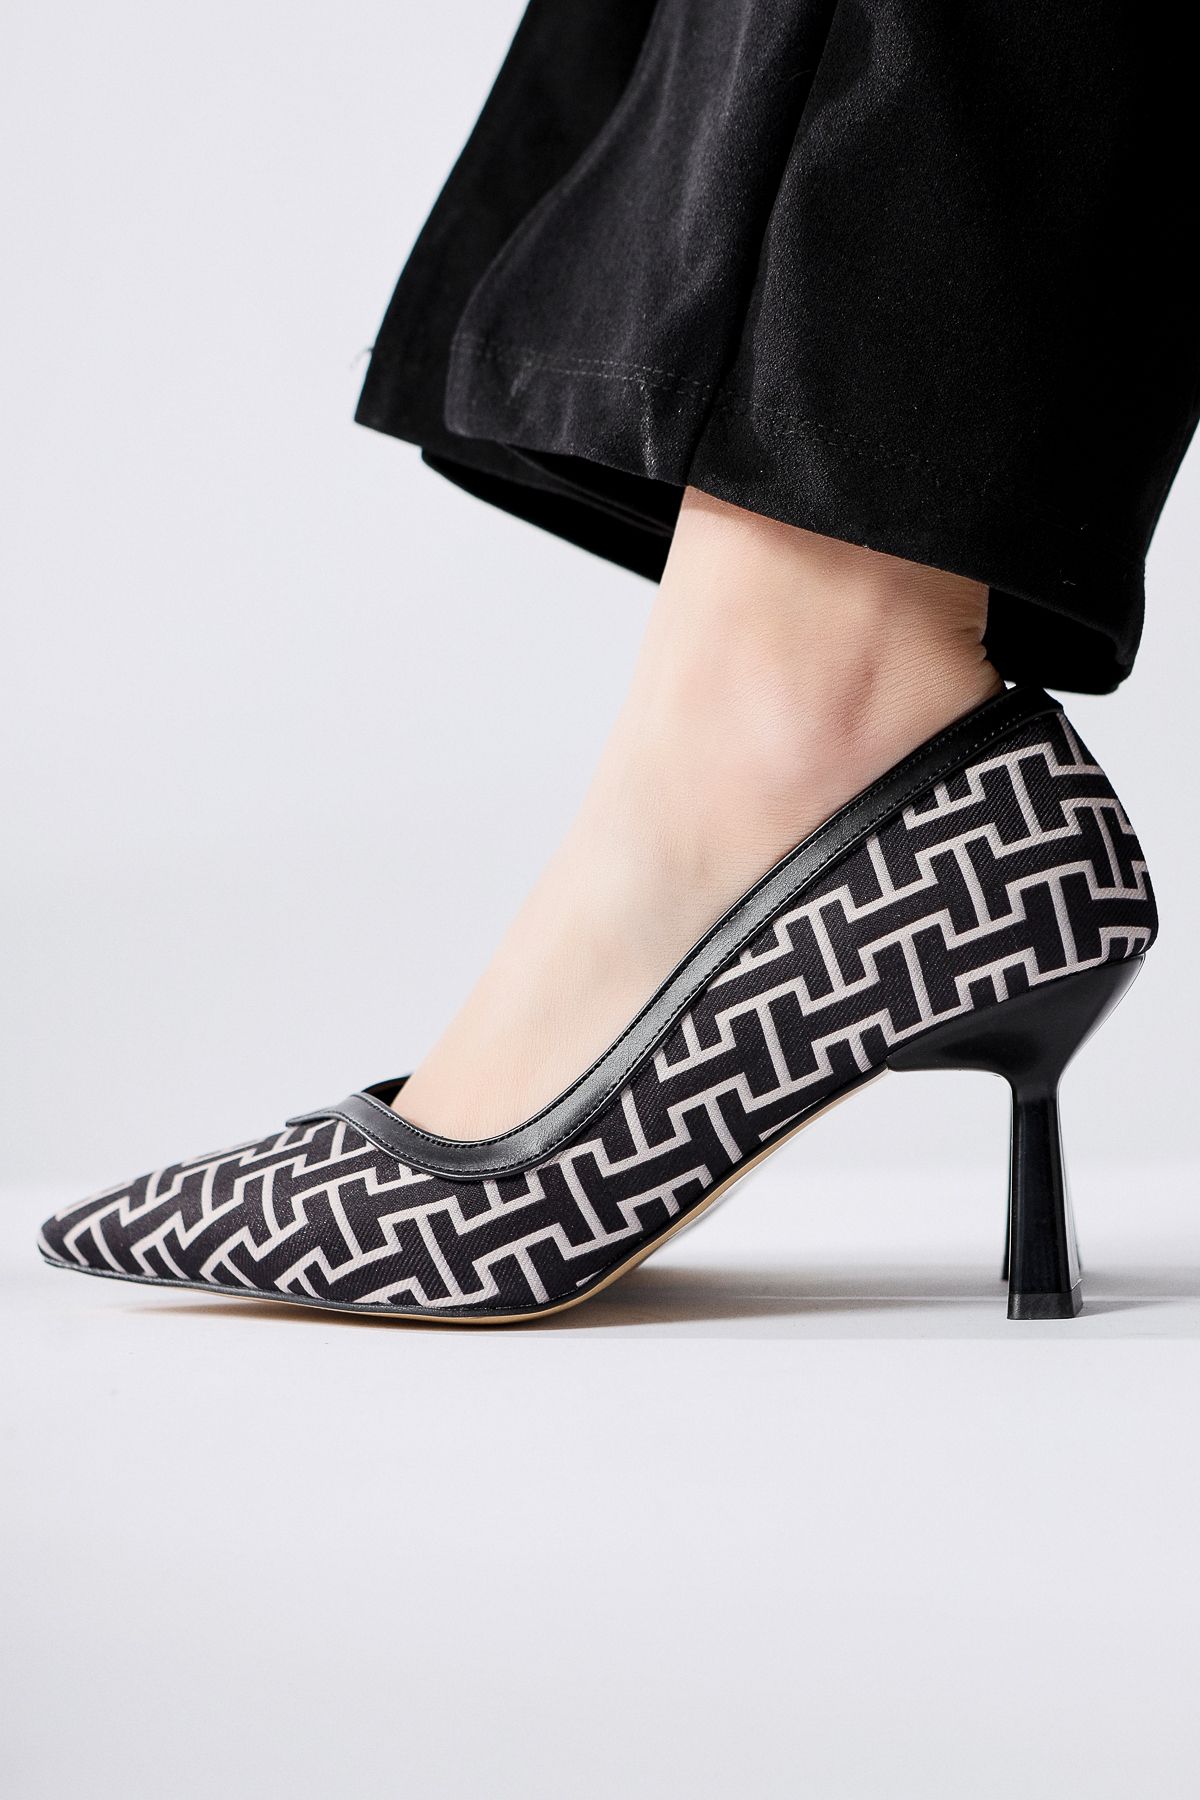 Limoya Lottis Siyah Geometrik Desenli Siviri Burunlu Topuklu Ayakkabı